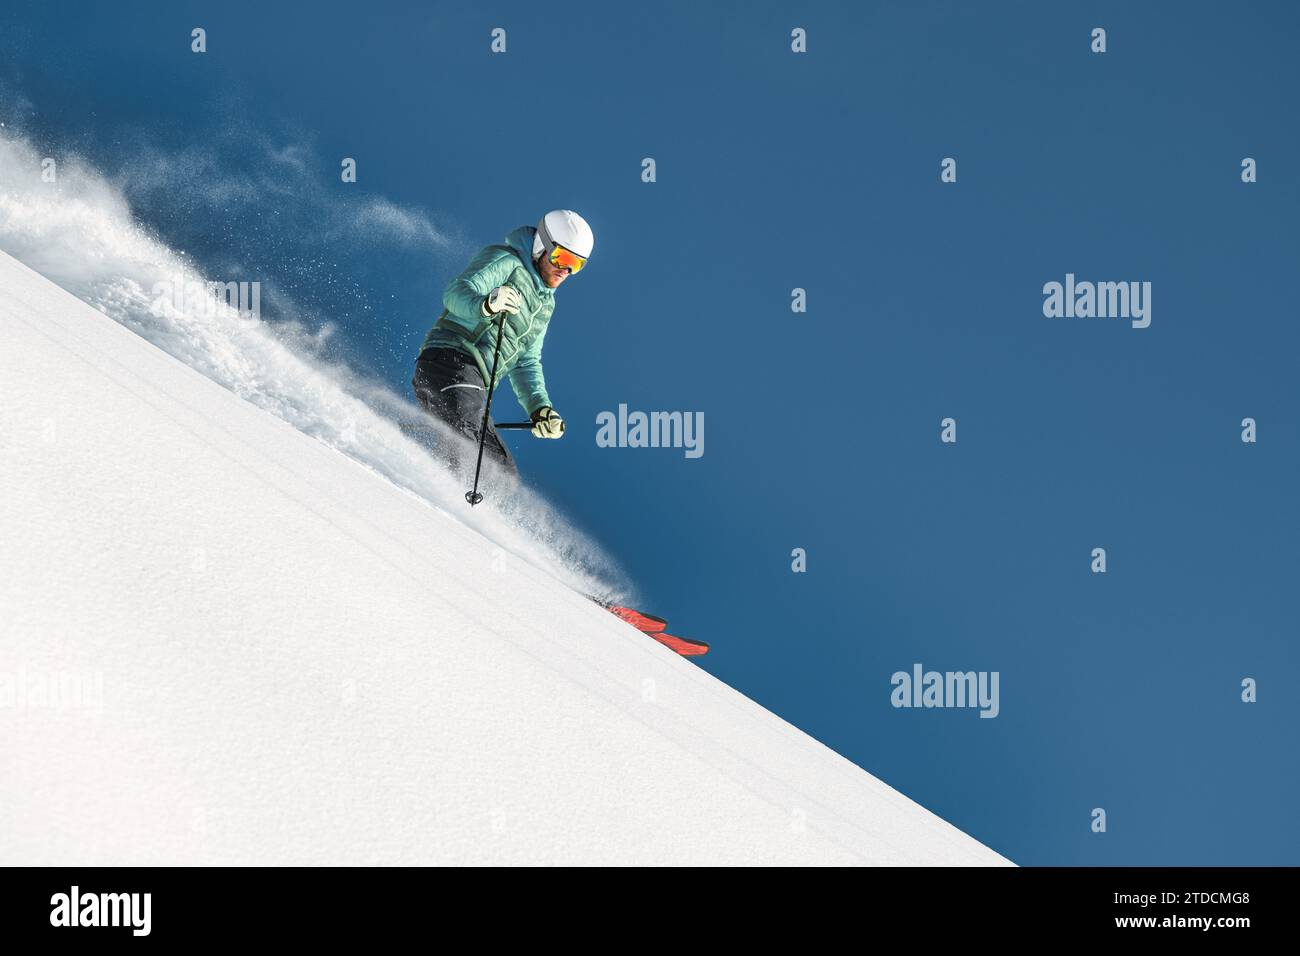 Homme skieur dans la neige fraîche hors piste Banque D'Images